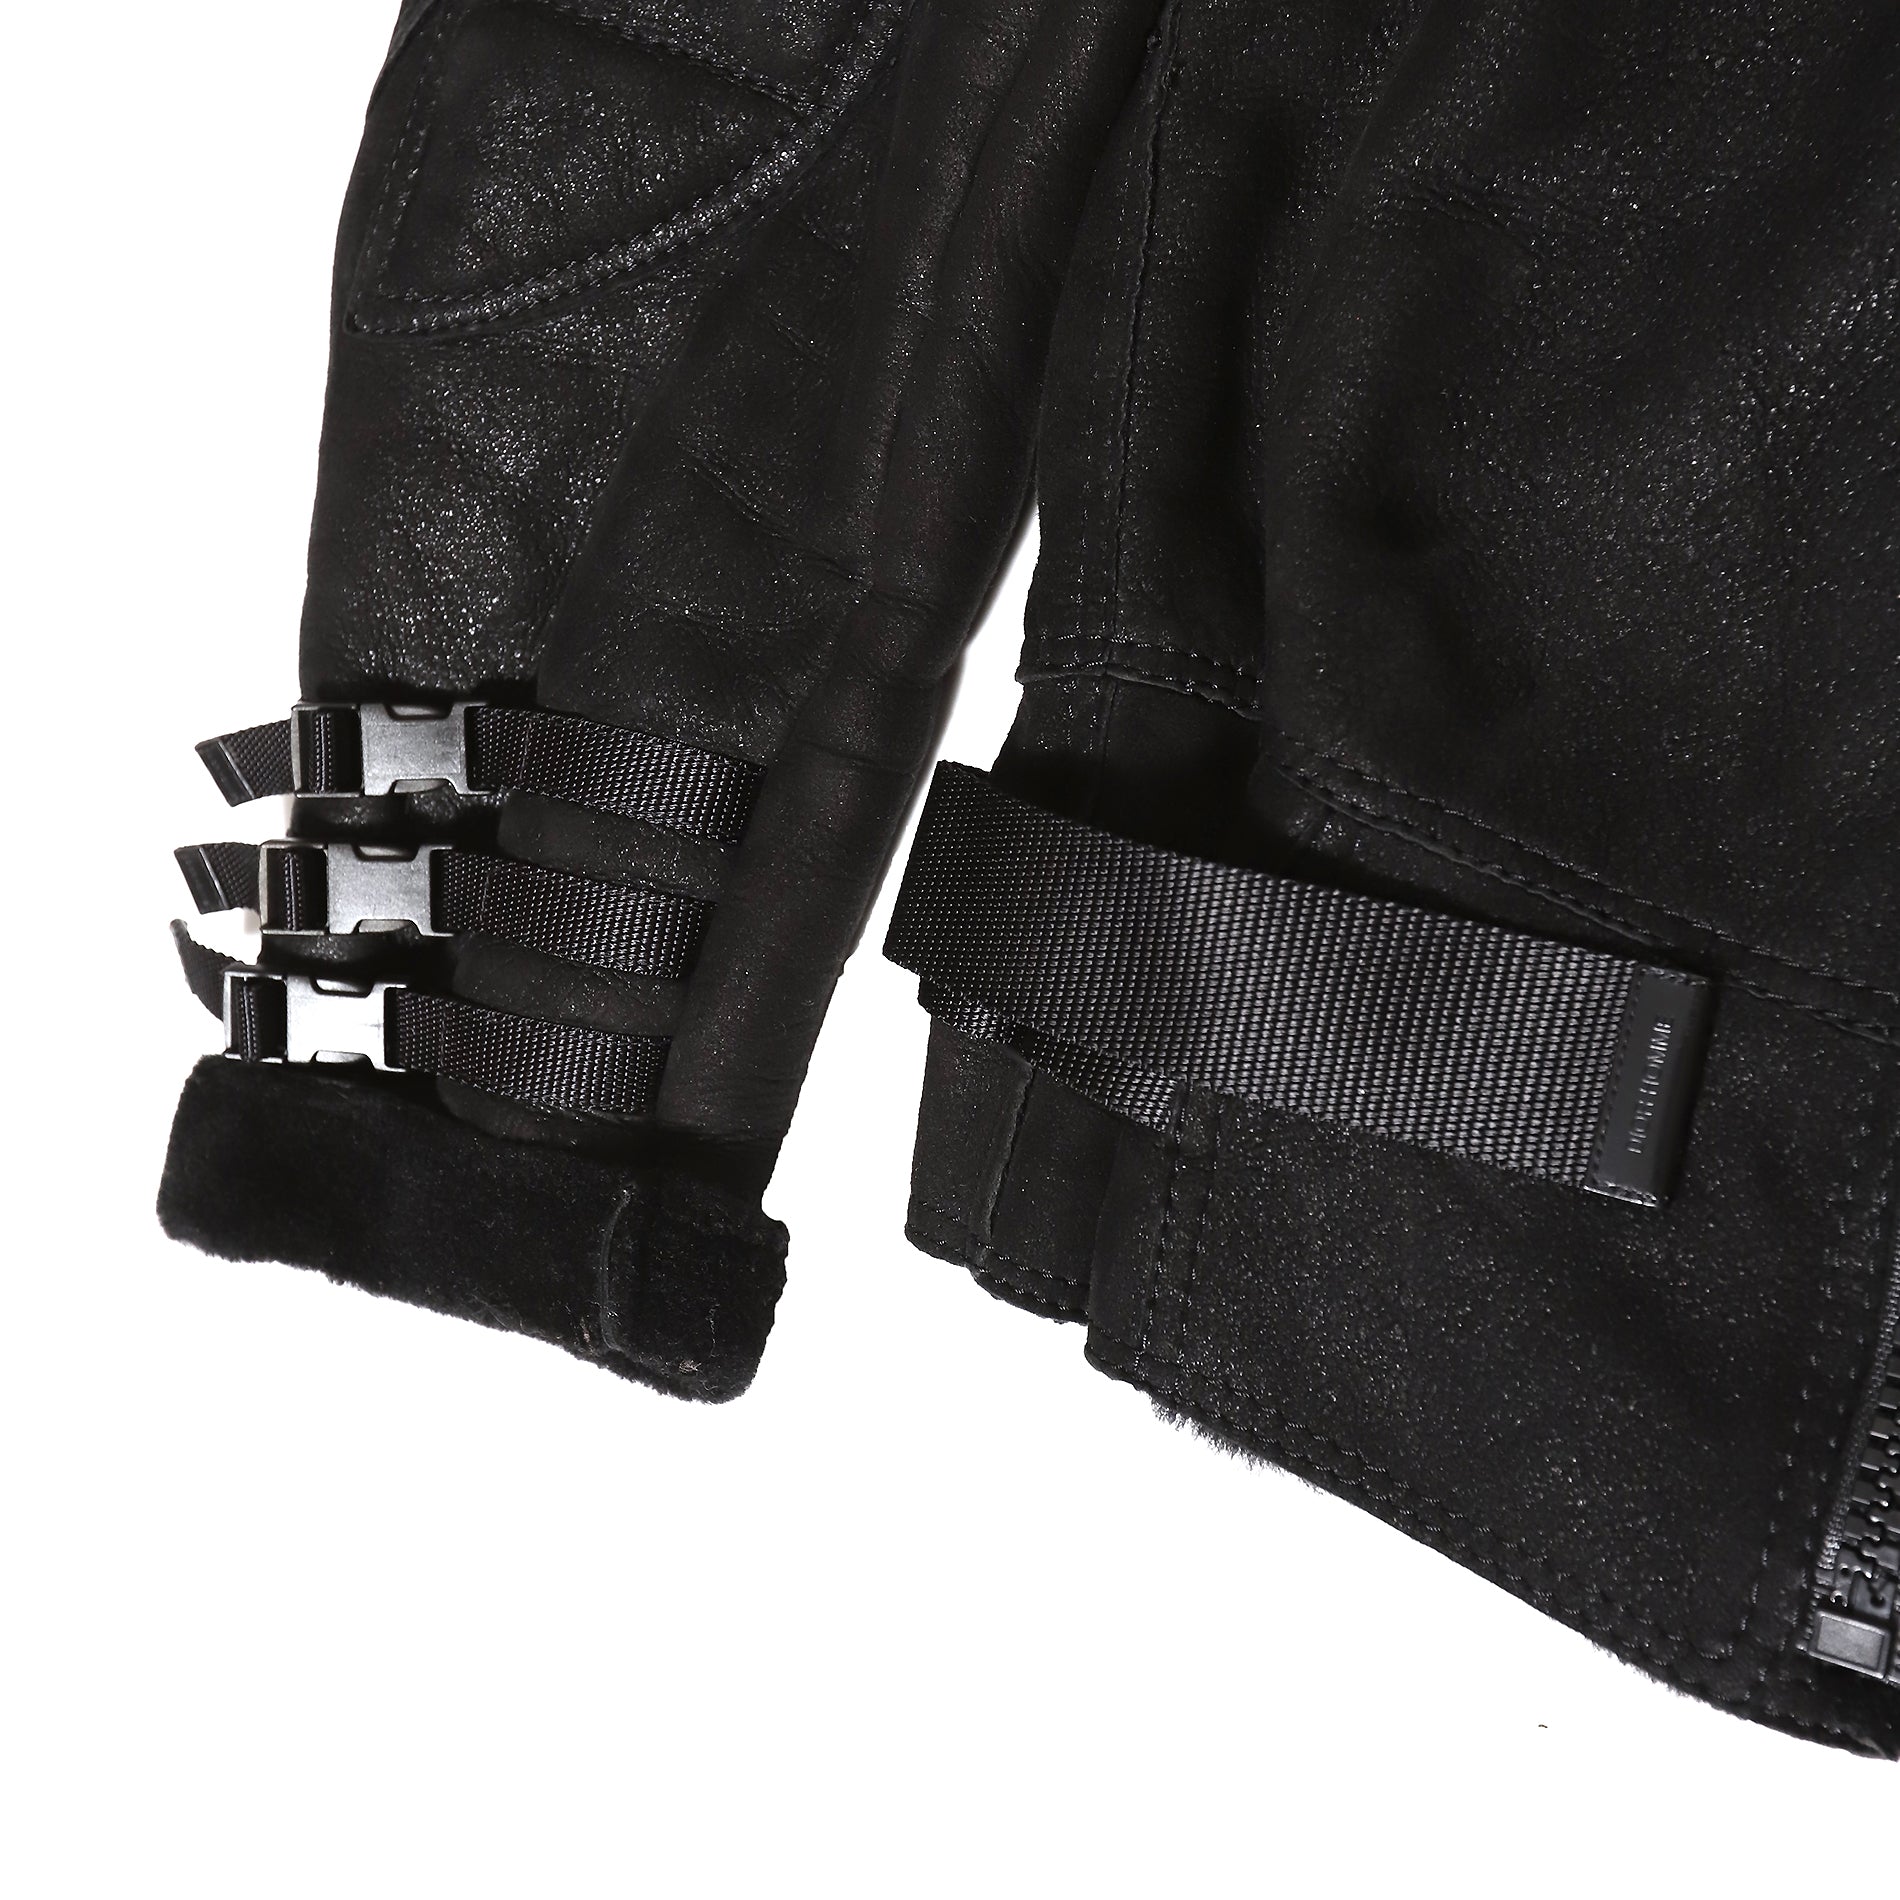 Dior Homme AW07 Navigate Black Shearling Biker Jacket